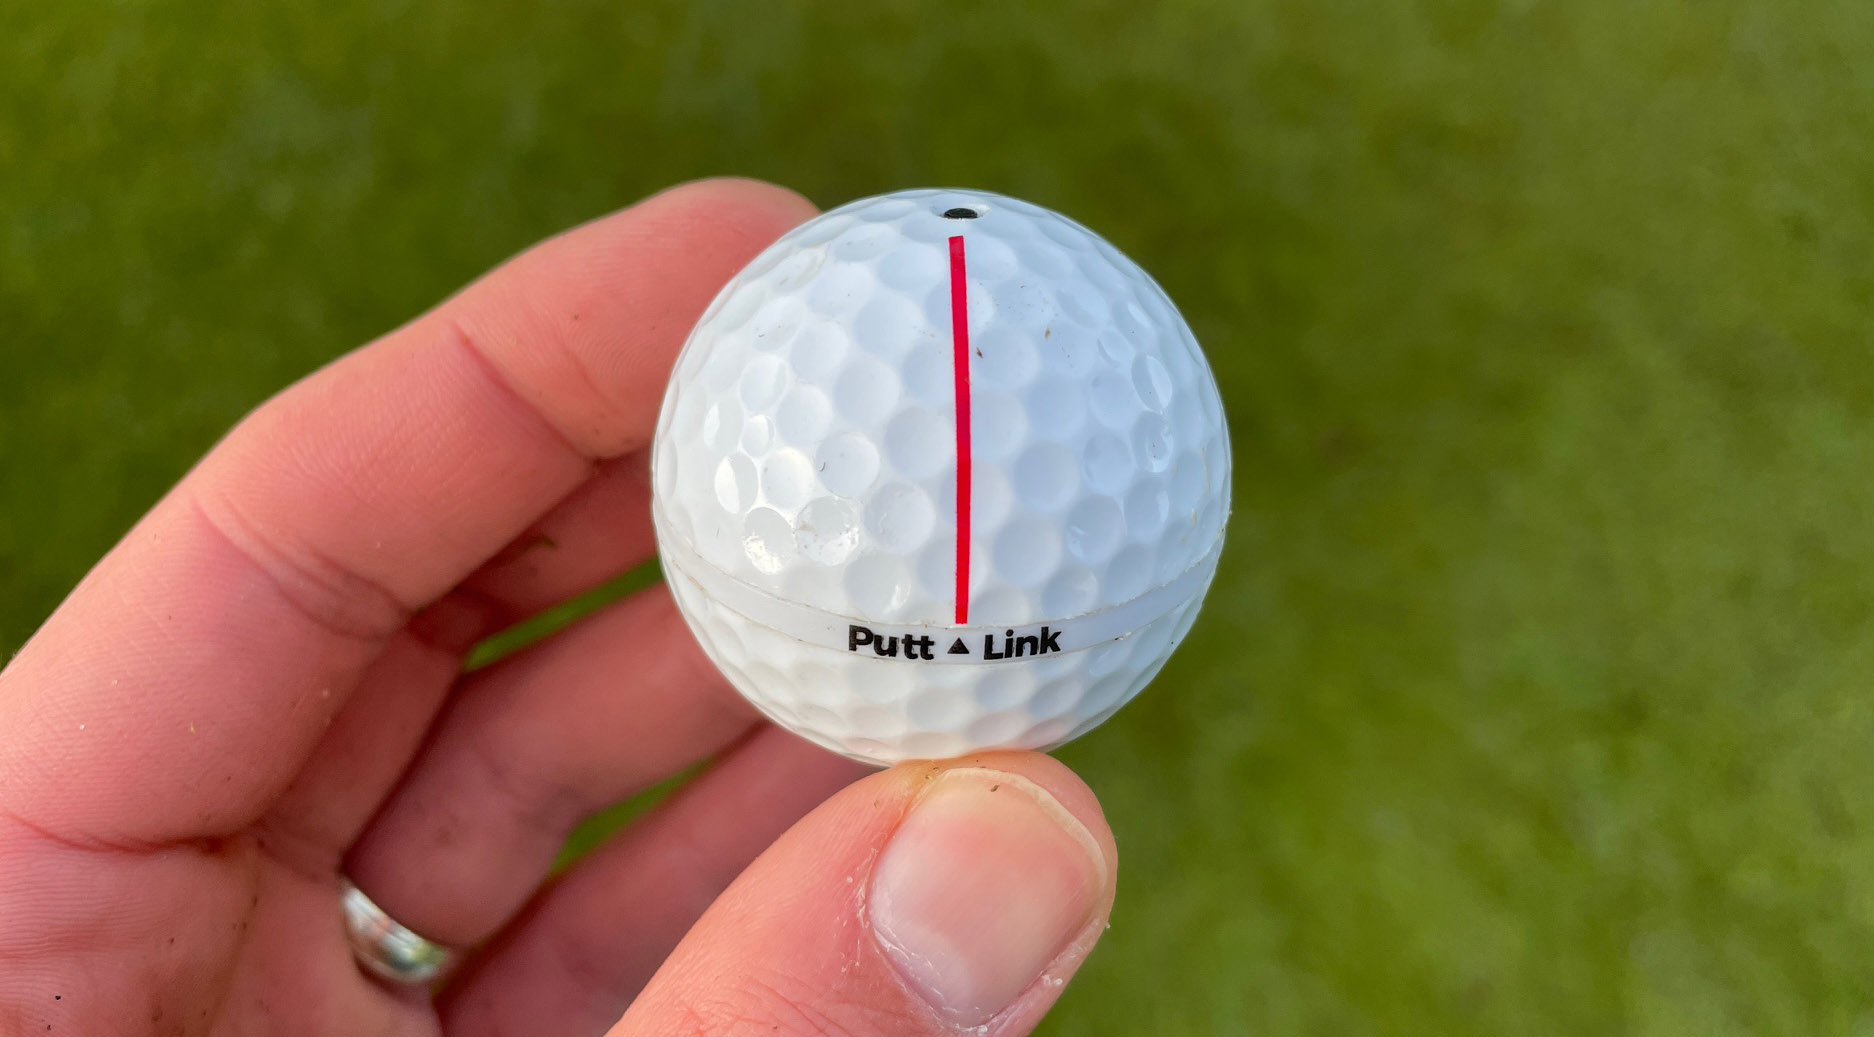 PuttLink smart ball